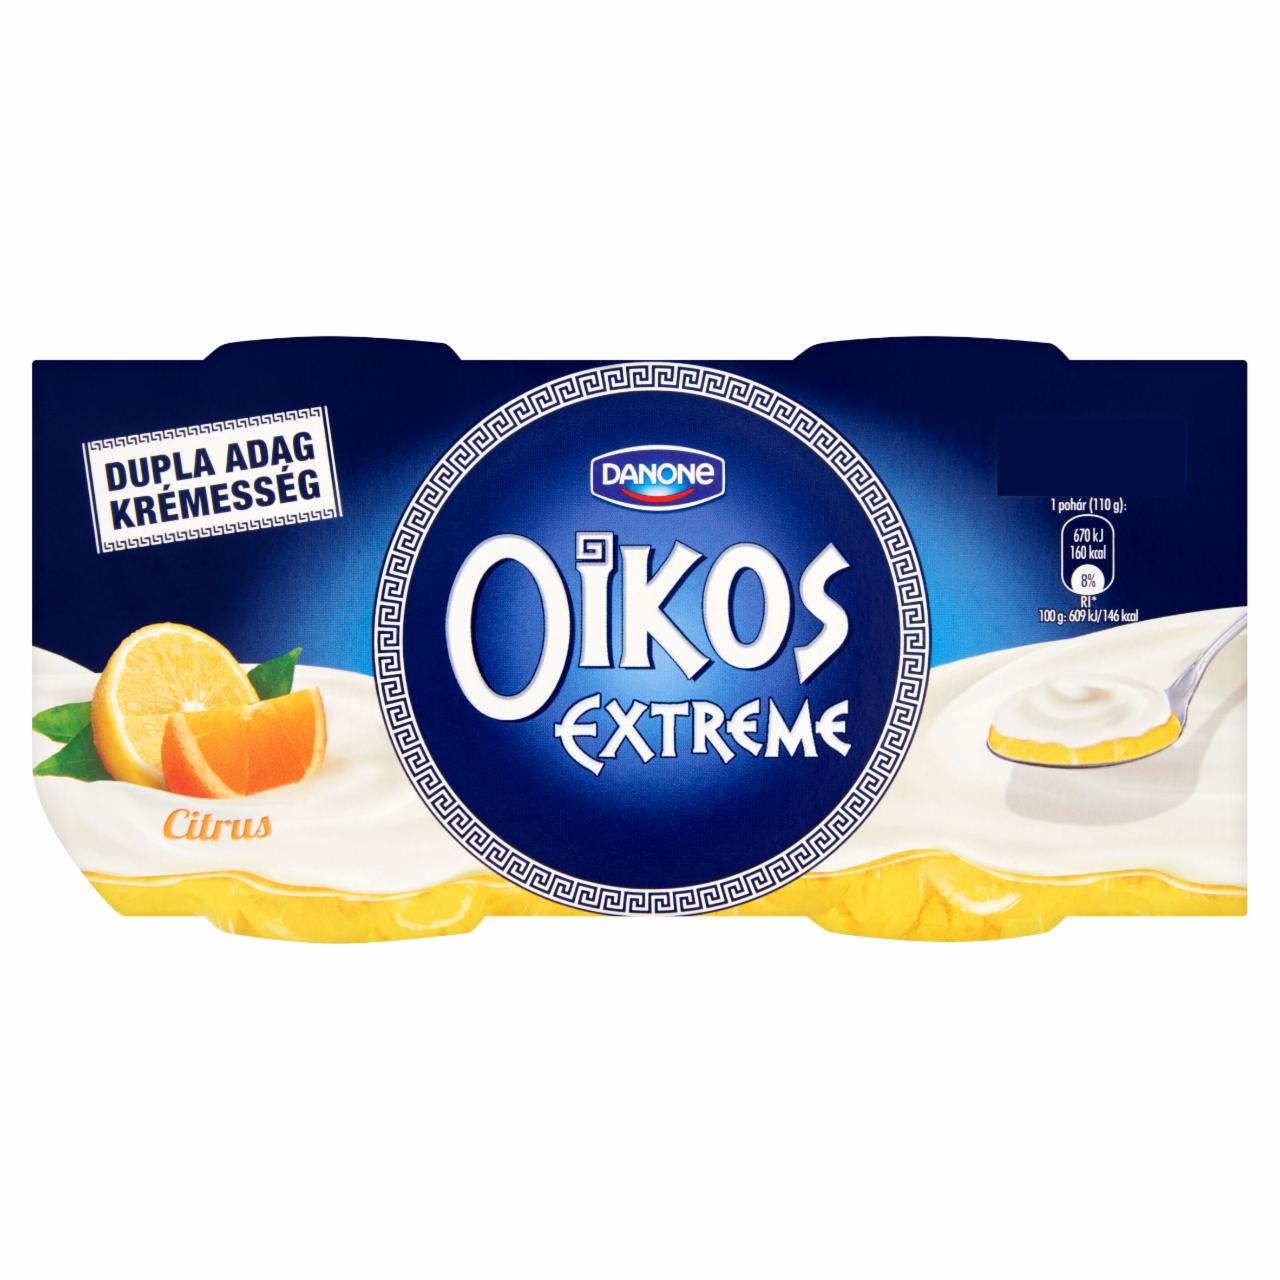 Képek - Danone Oikos Extreme élőflórás görög krémjoghurt citrusöntettel 2 x 110 g